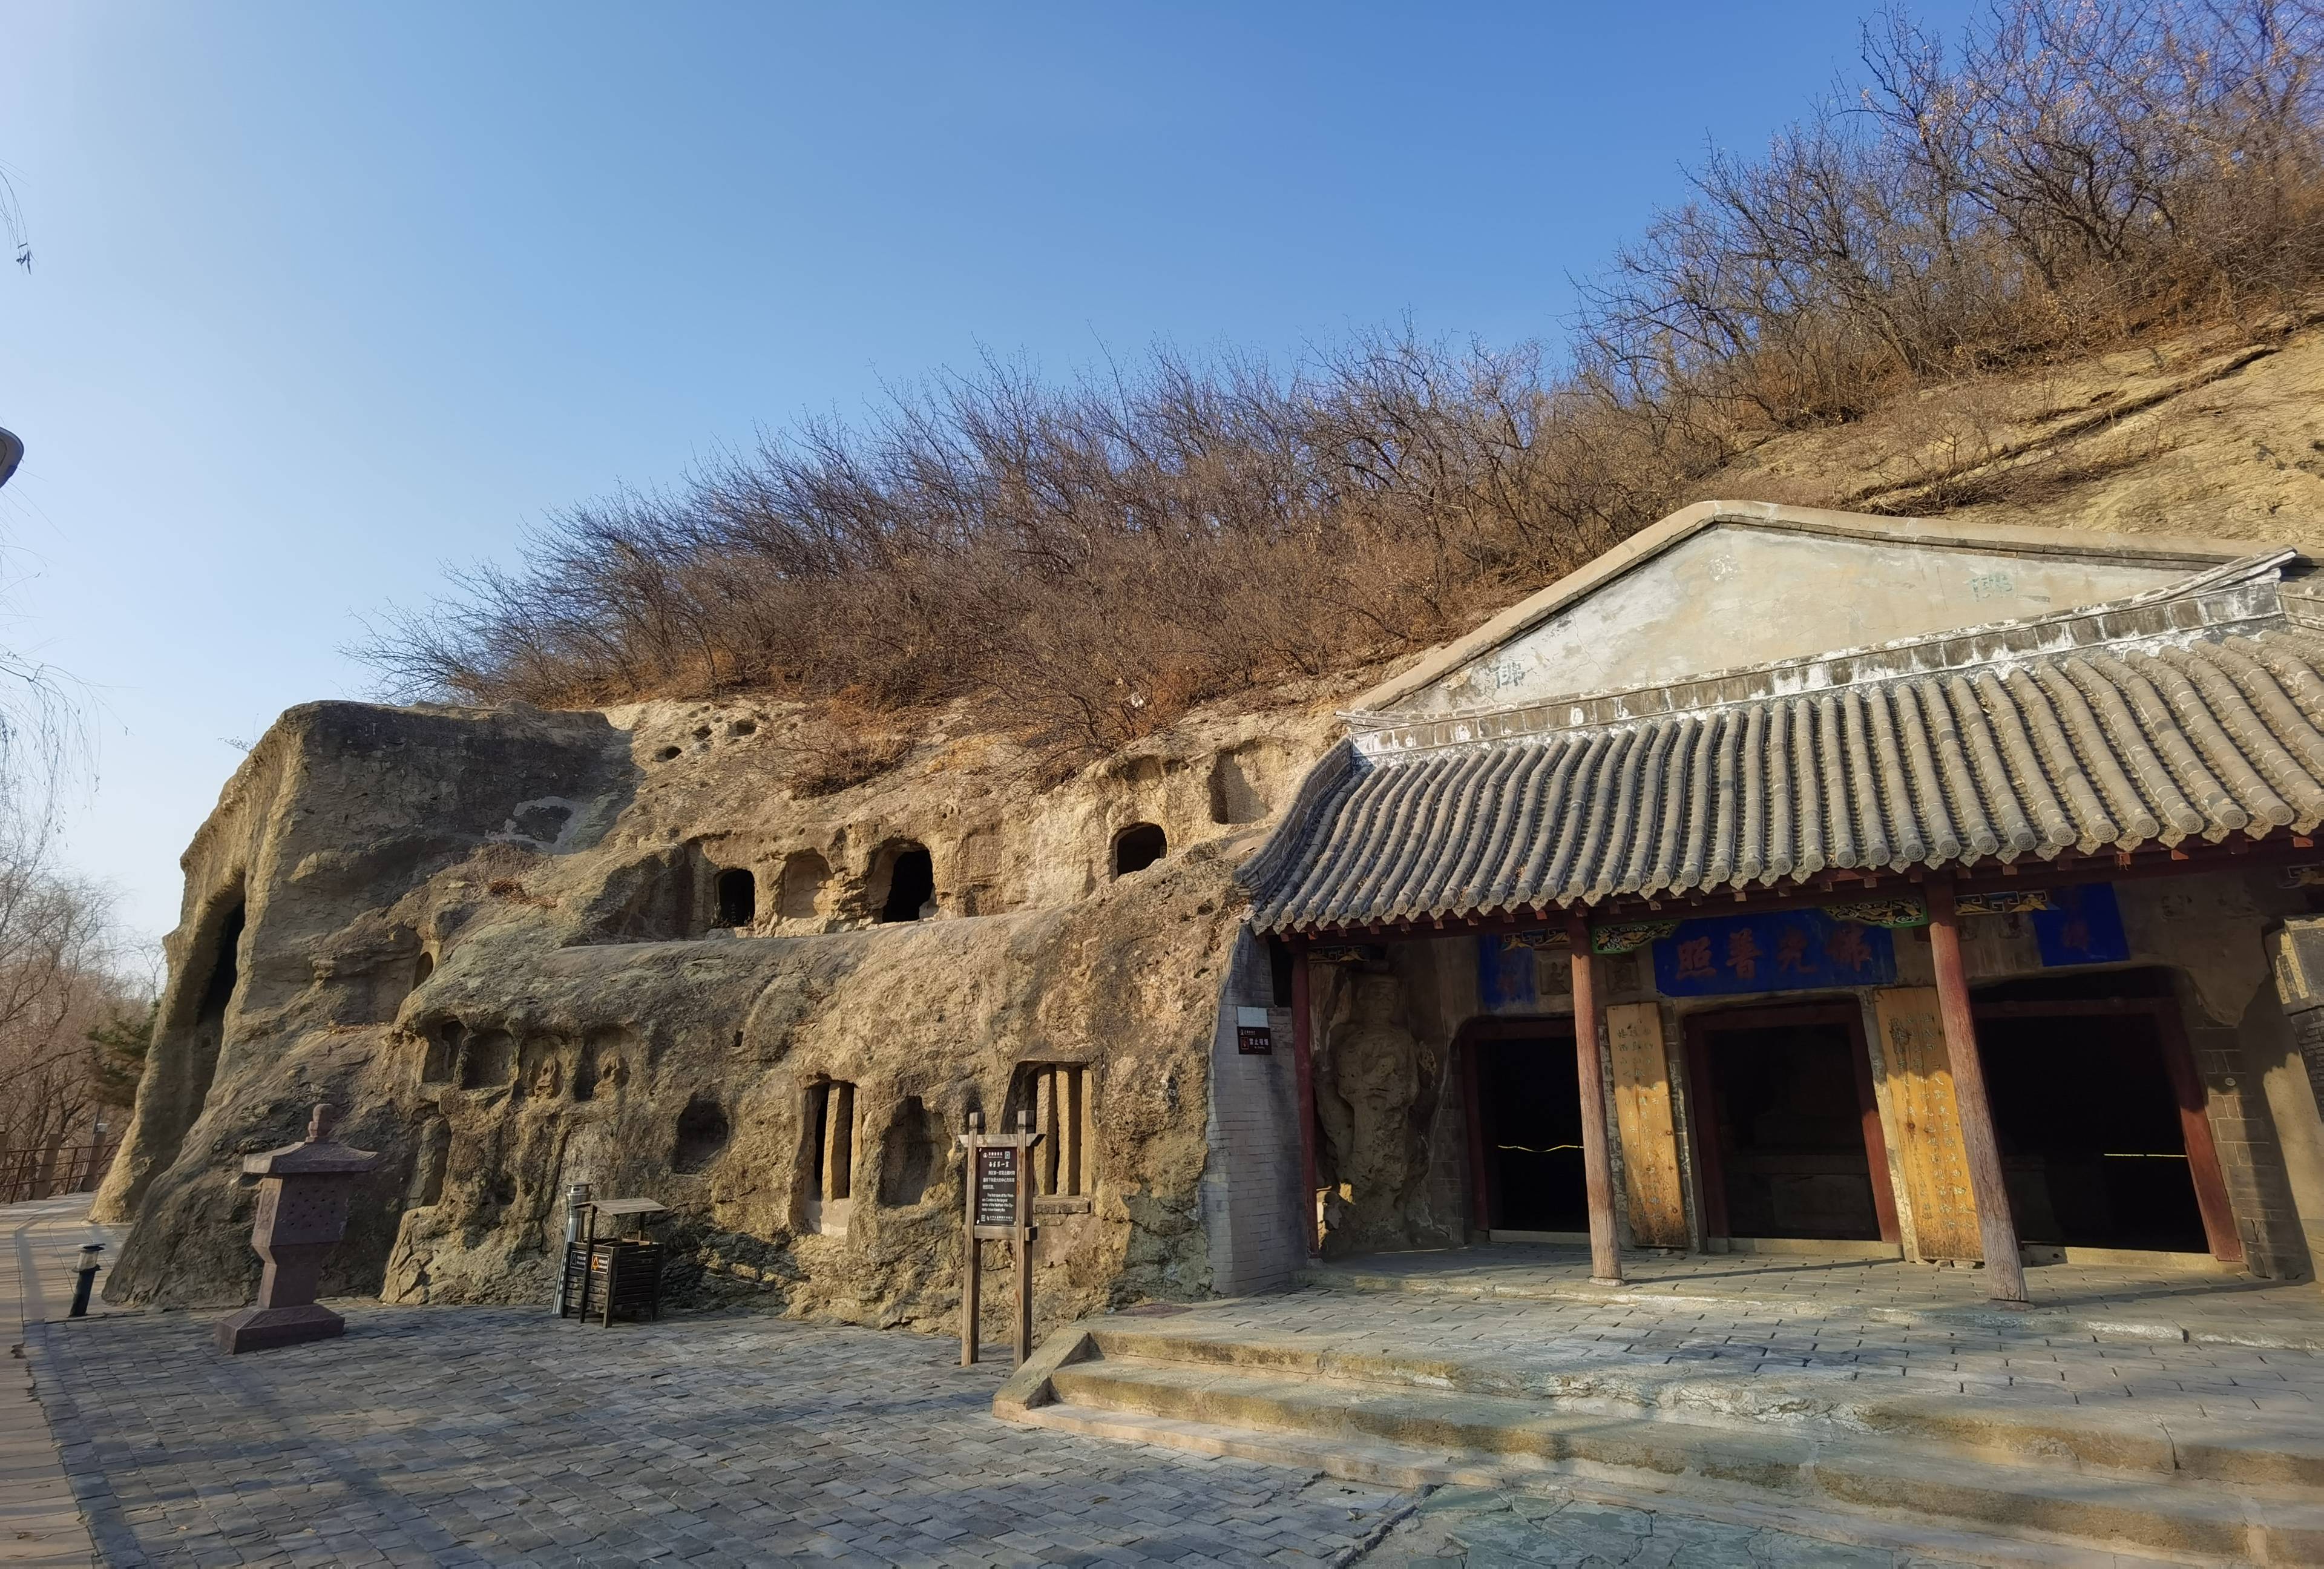 万佛堂石窟开凿于北魏太和二十三年(公元499年),位于大凌河的北岸